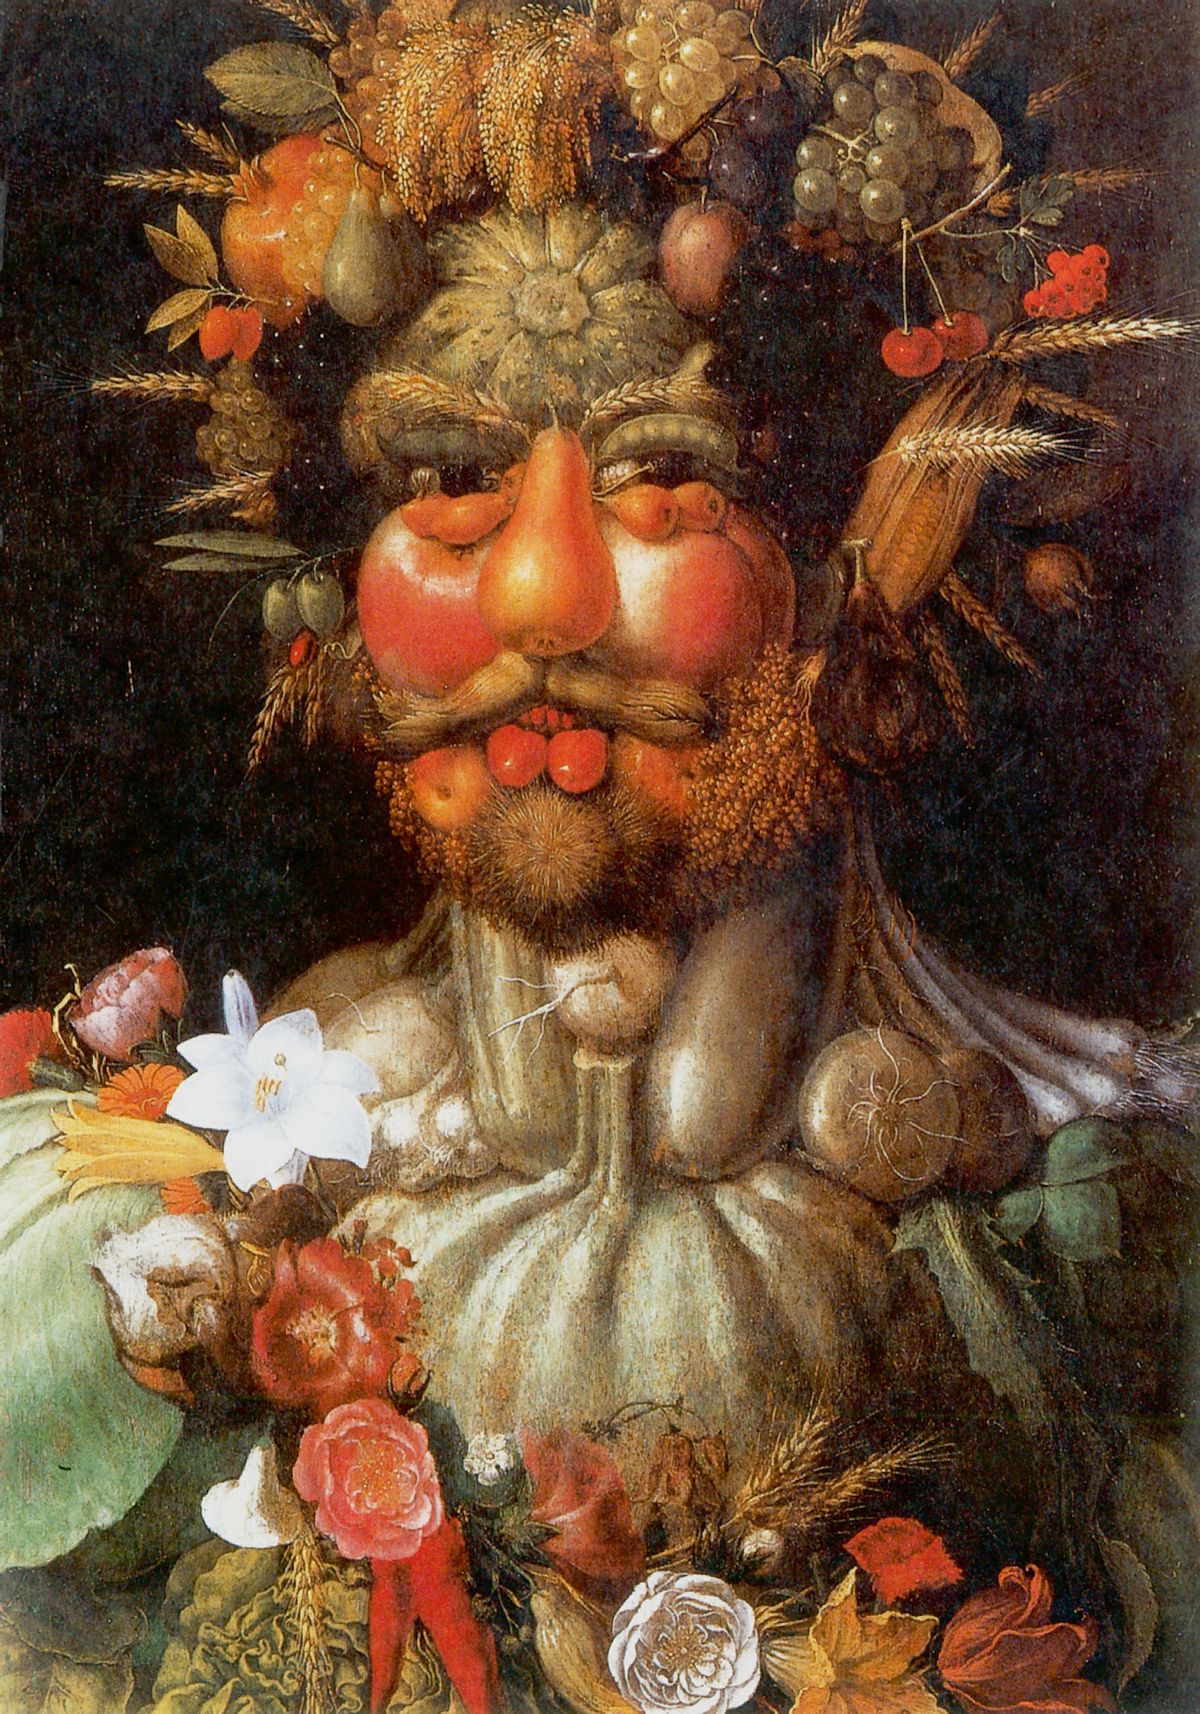 Císař jako Bůh Vertumnus, bůh přírodních proměn v podání malíře Giuseppa Arcimbolda